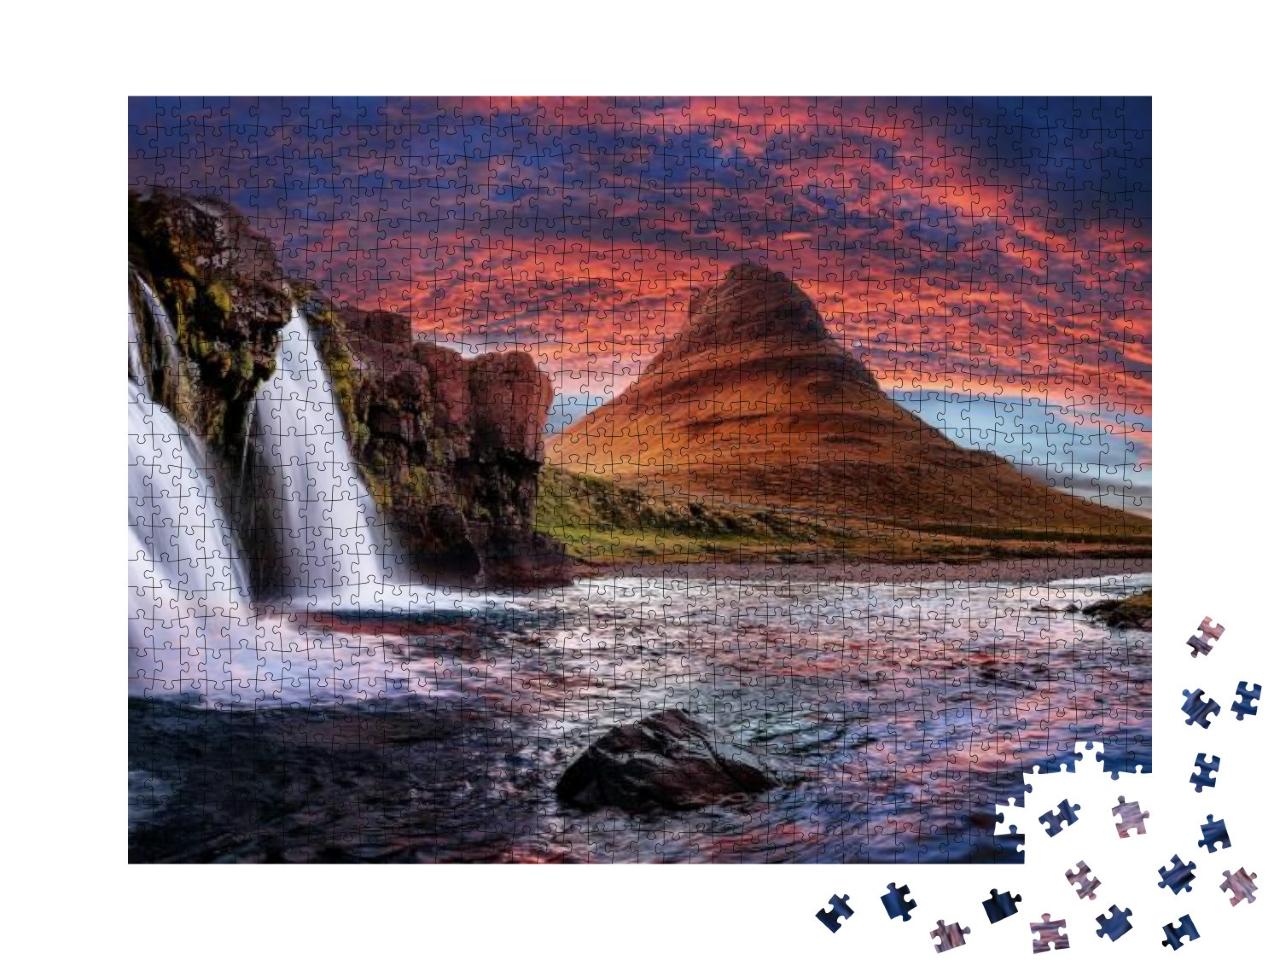 Puzzle 1000 Teile „Majestätischer Kirchenberg und Wasserfälle in Island“